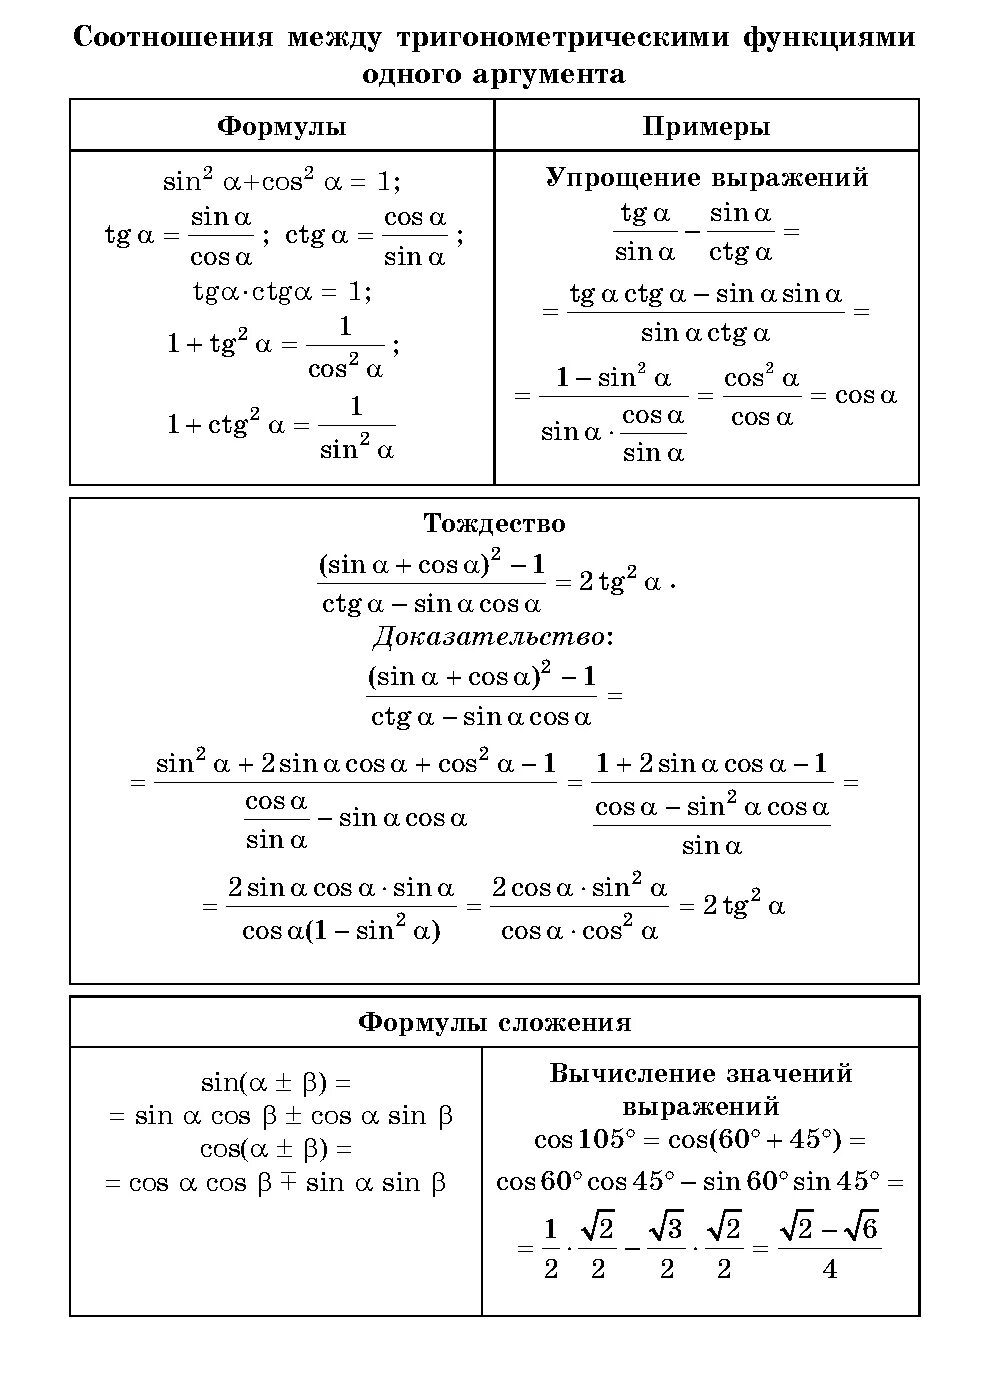 Формулы соотношения тригонометрических функций. Формулы соотношения между тригонометрическими функциями таблица. Основные тригонометрические формулы. Основные тригонометрические тождества 10 класс формулы. Тригонометрические функции 8 класс самостоятельная